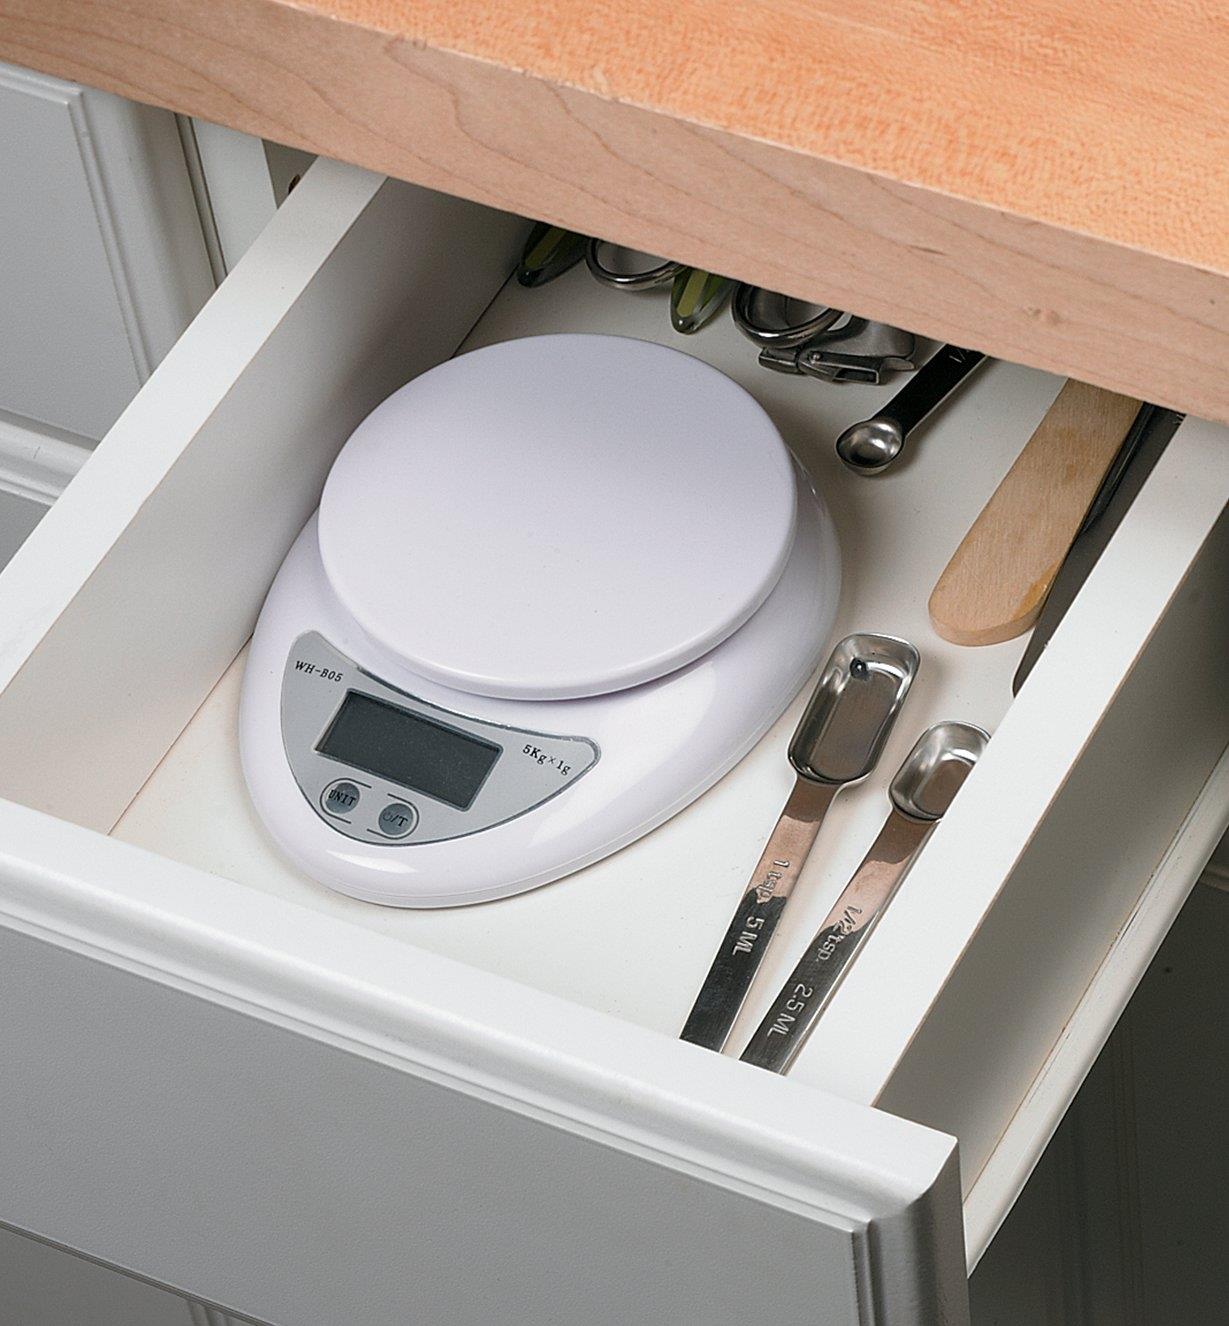 Minibalance de cuisine numérique rangée dans un tiroir